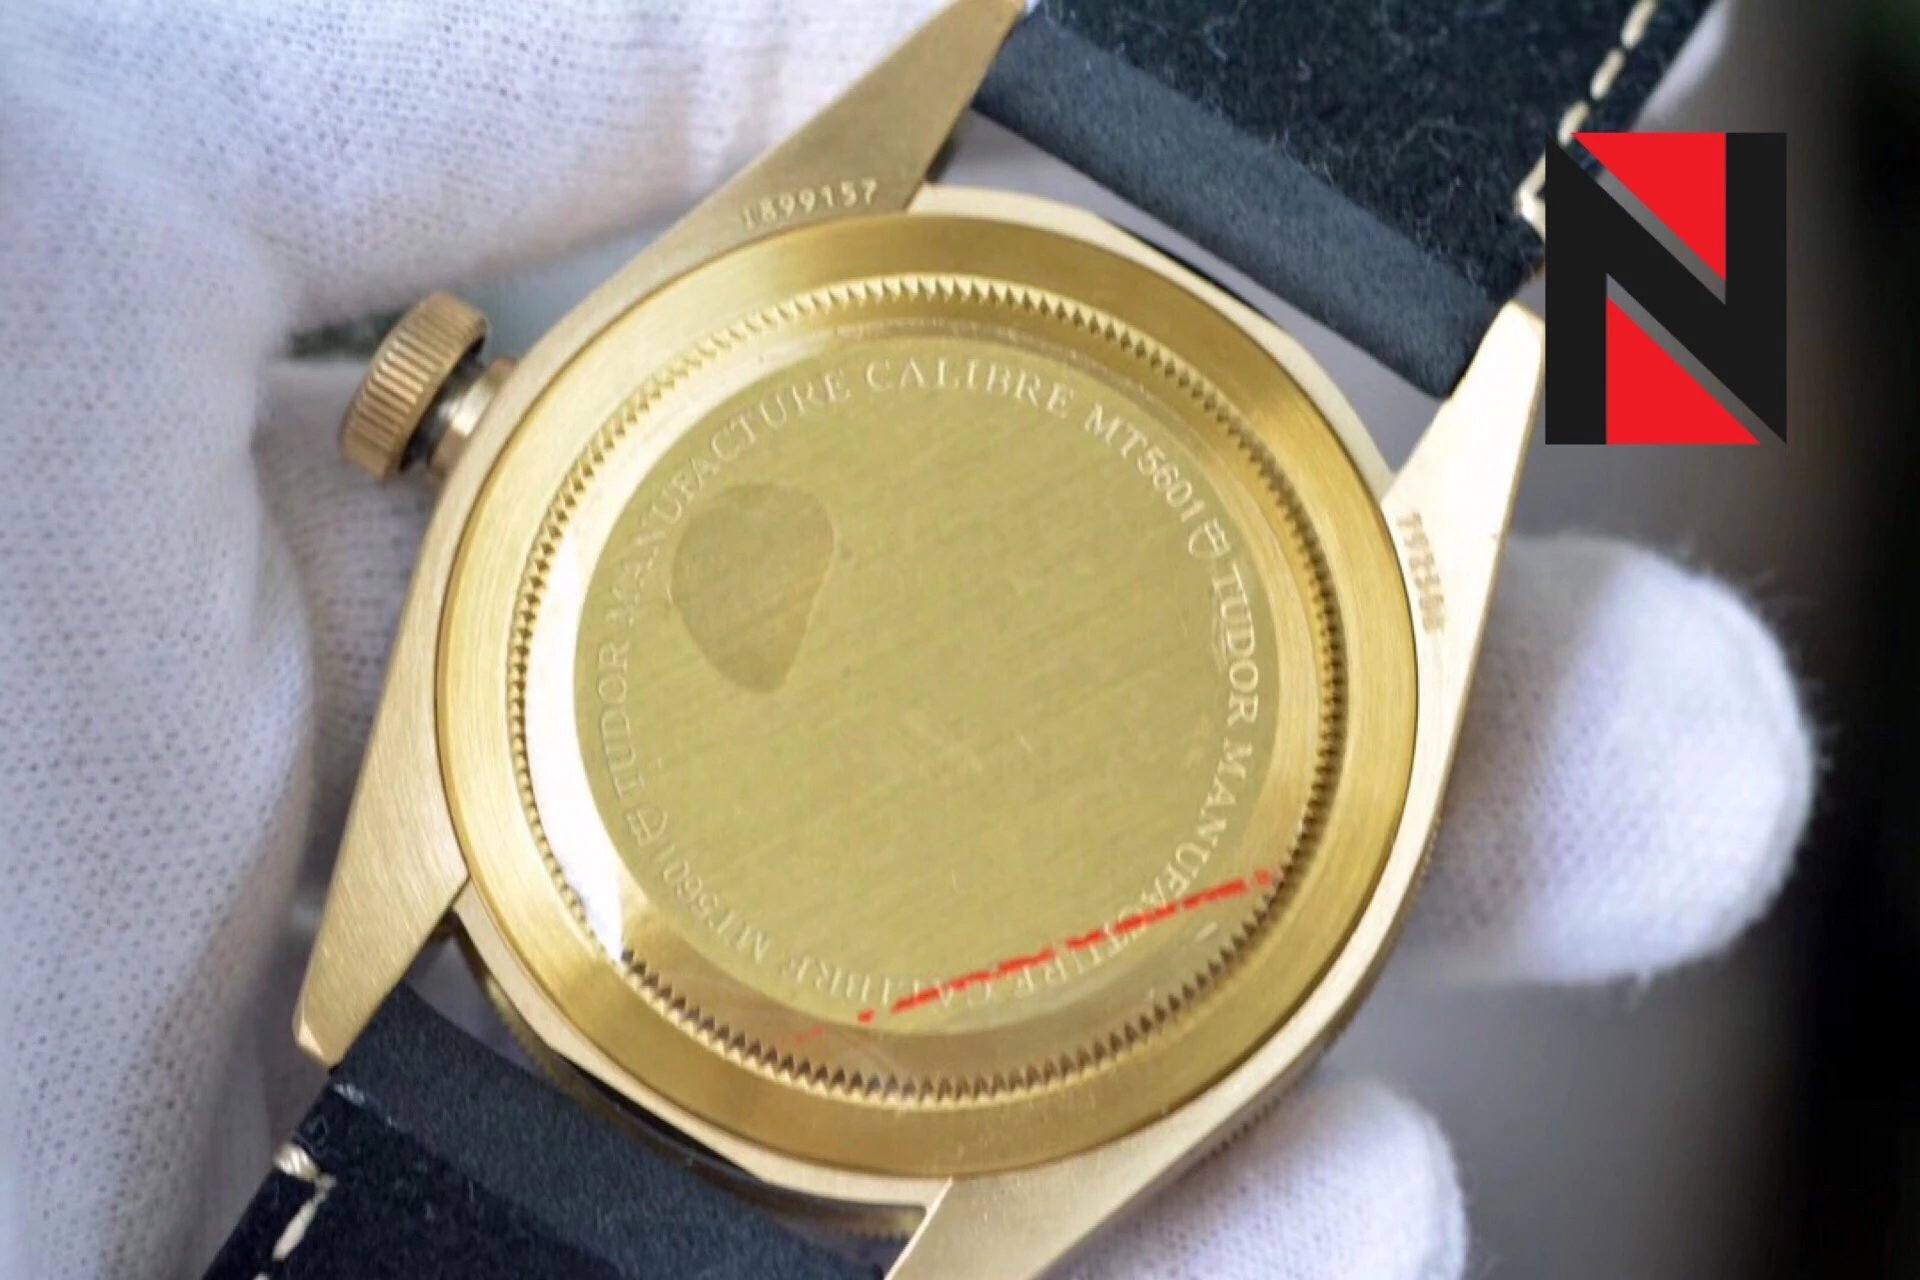 ZF出品最有情怀的复K表碧湾青铜型—M79250BA-0001腕表。【表壳】腕表尺寸43毫米。作为复K青铜材质的先驱者，这是ZF复K的第五只青铜腕表